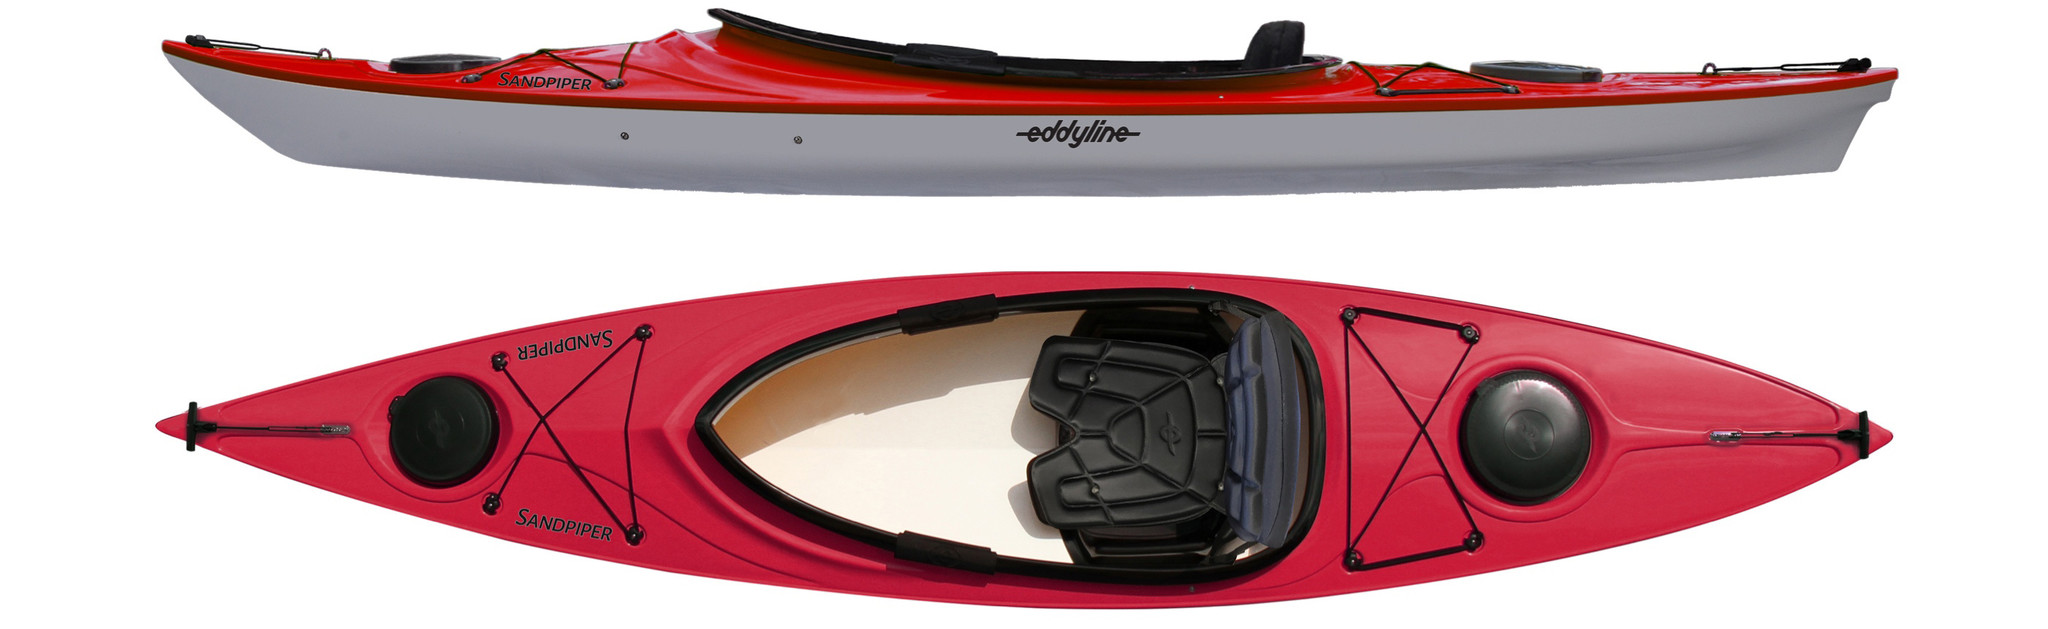 Eddyline Sandpiper Kayak